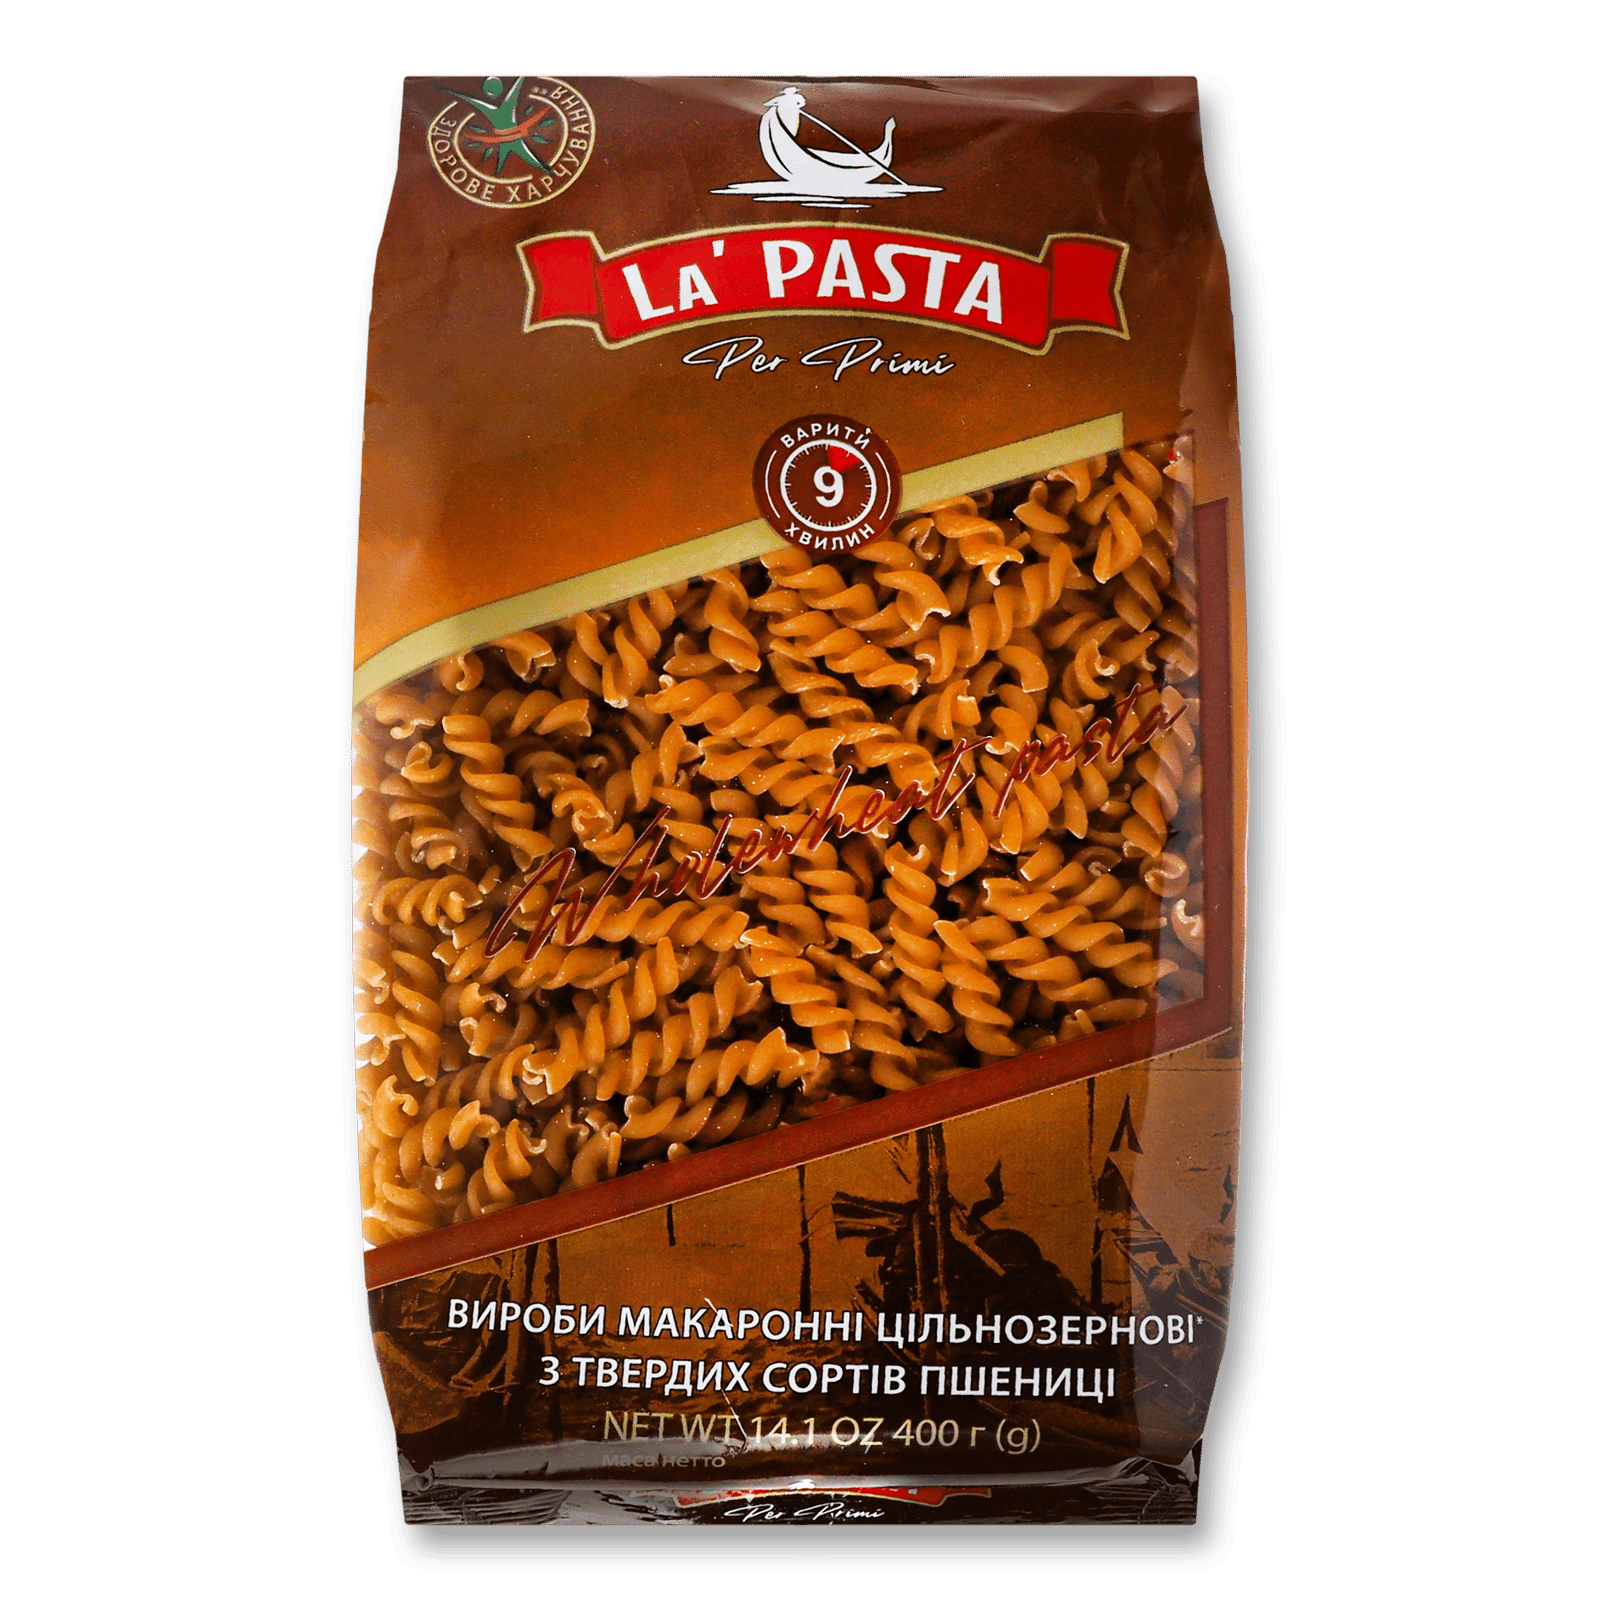 Вироби макаронні La Pasta спіраль цільнозернові - 1